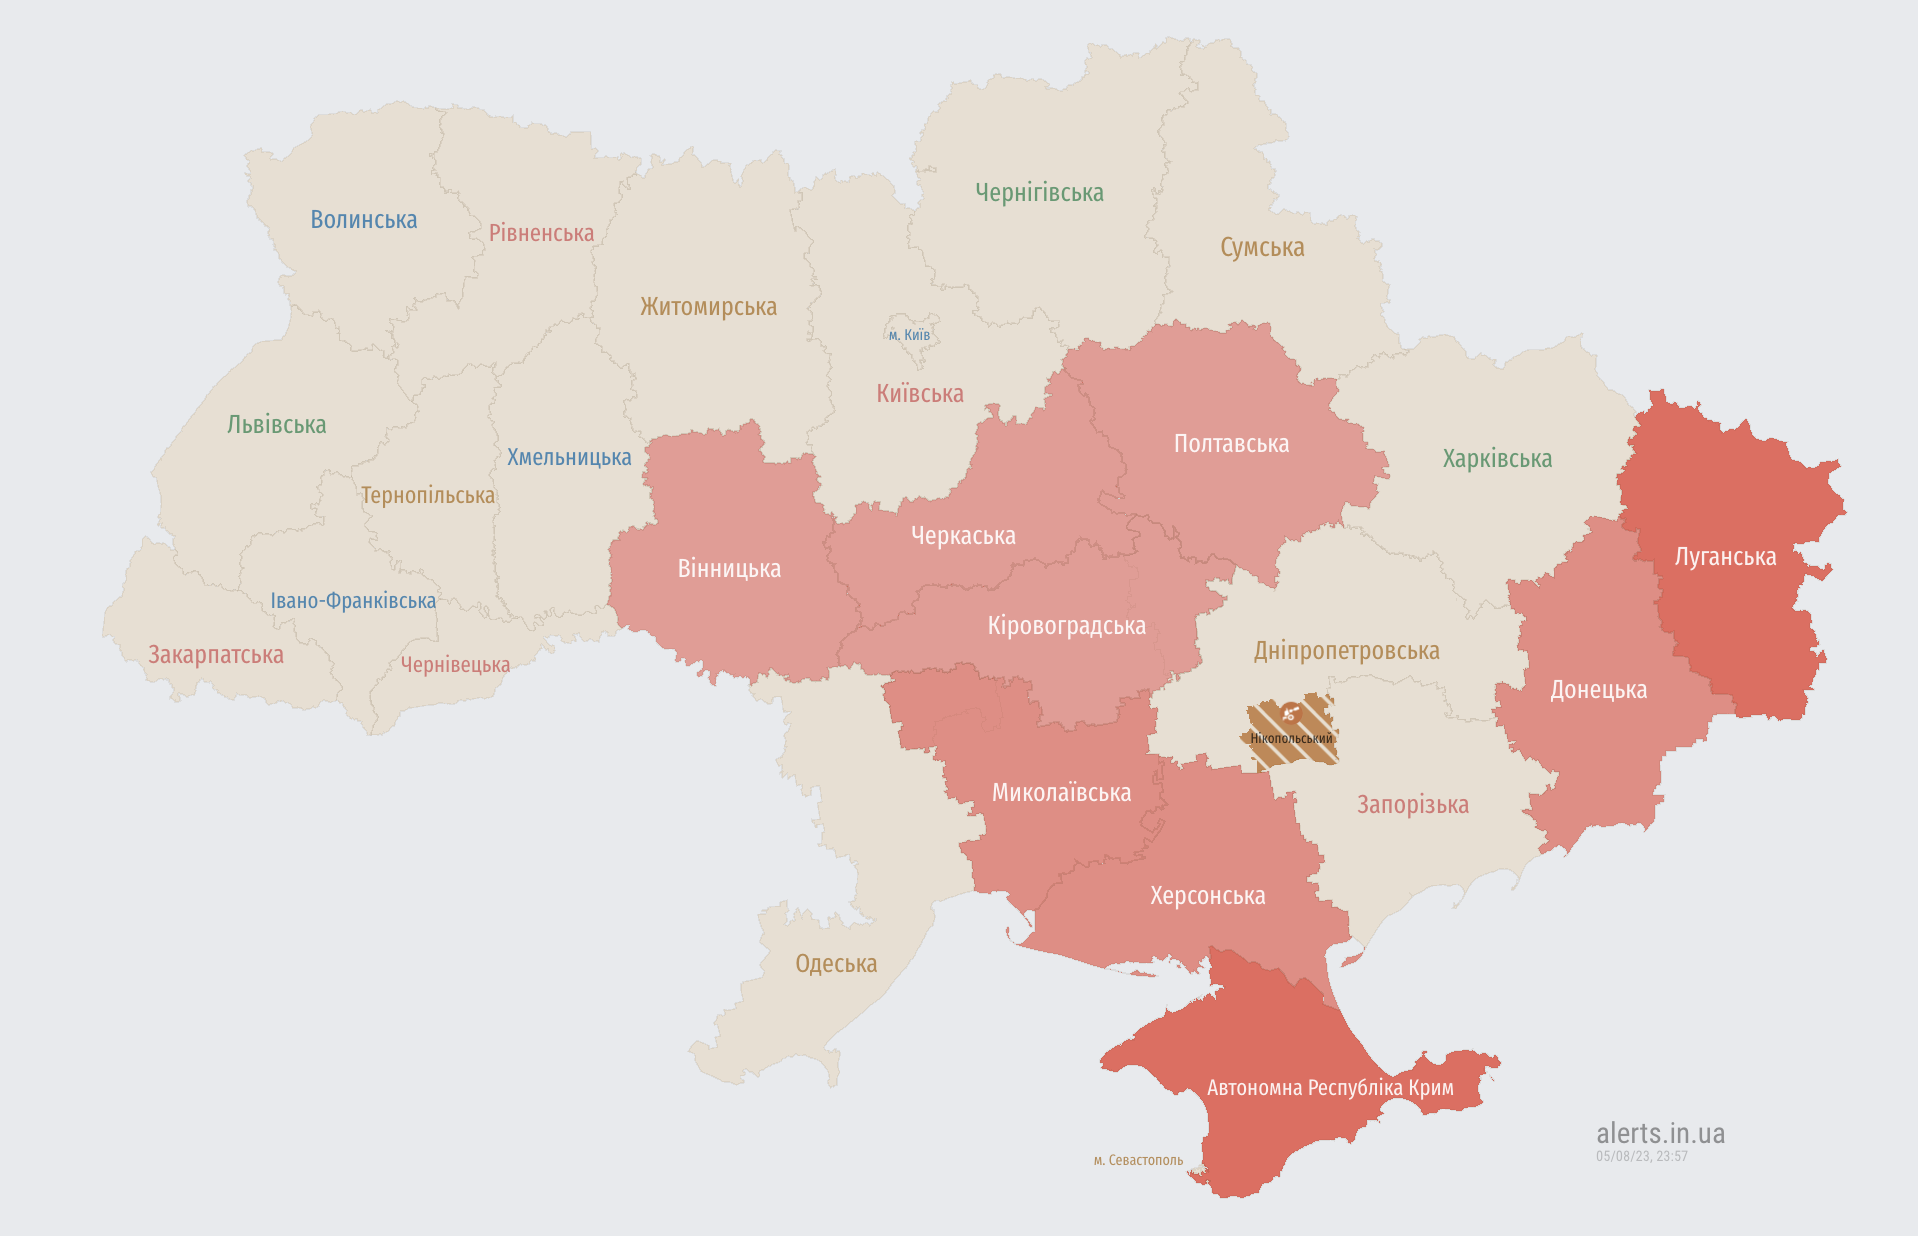 Воздушная тревога на юге и в центре Украины: есть угроза ударных БПЛА и ракет